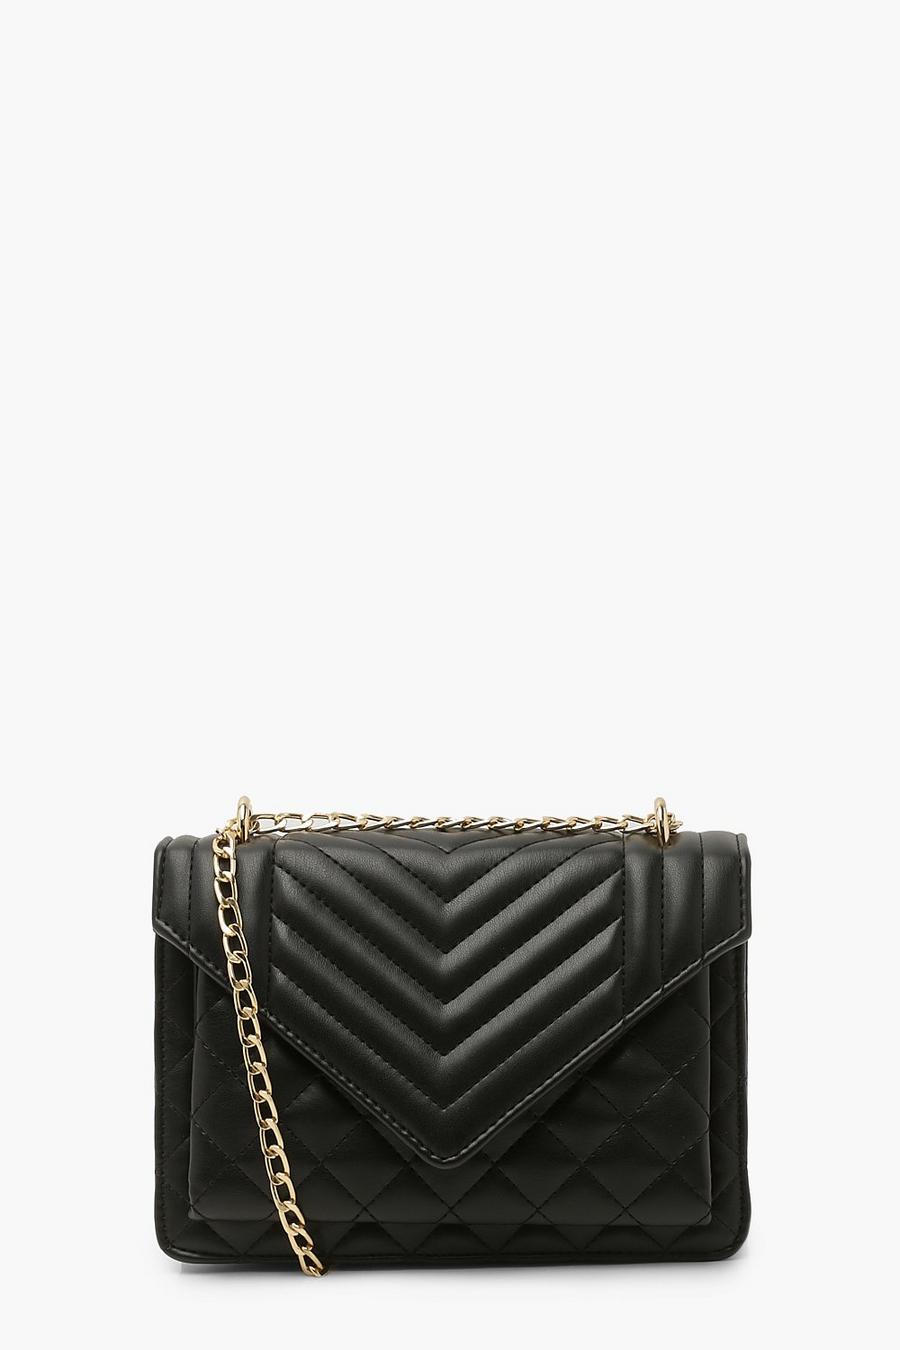 Black Quilted Chain Shoulder Bag image number 1